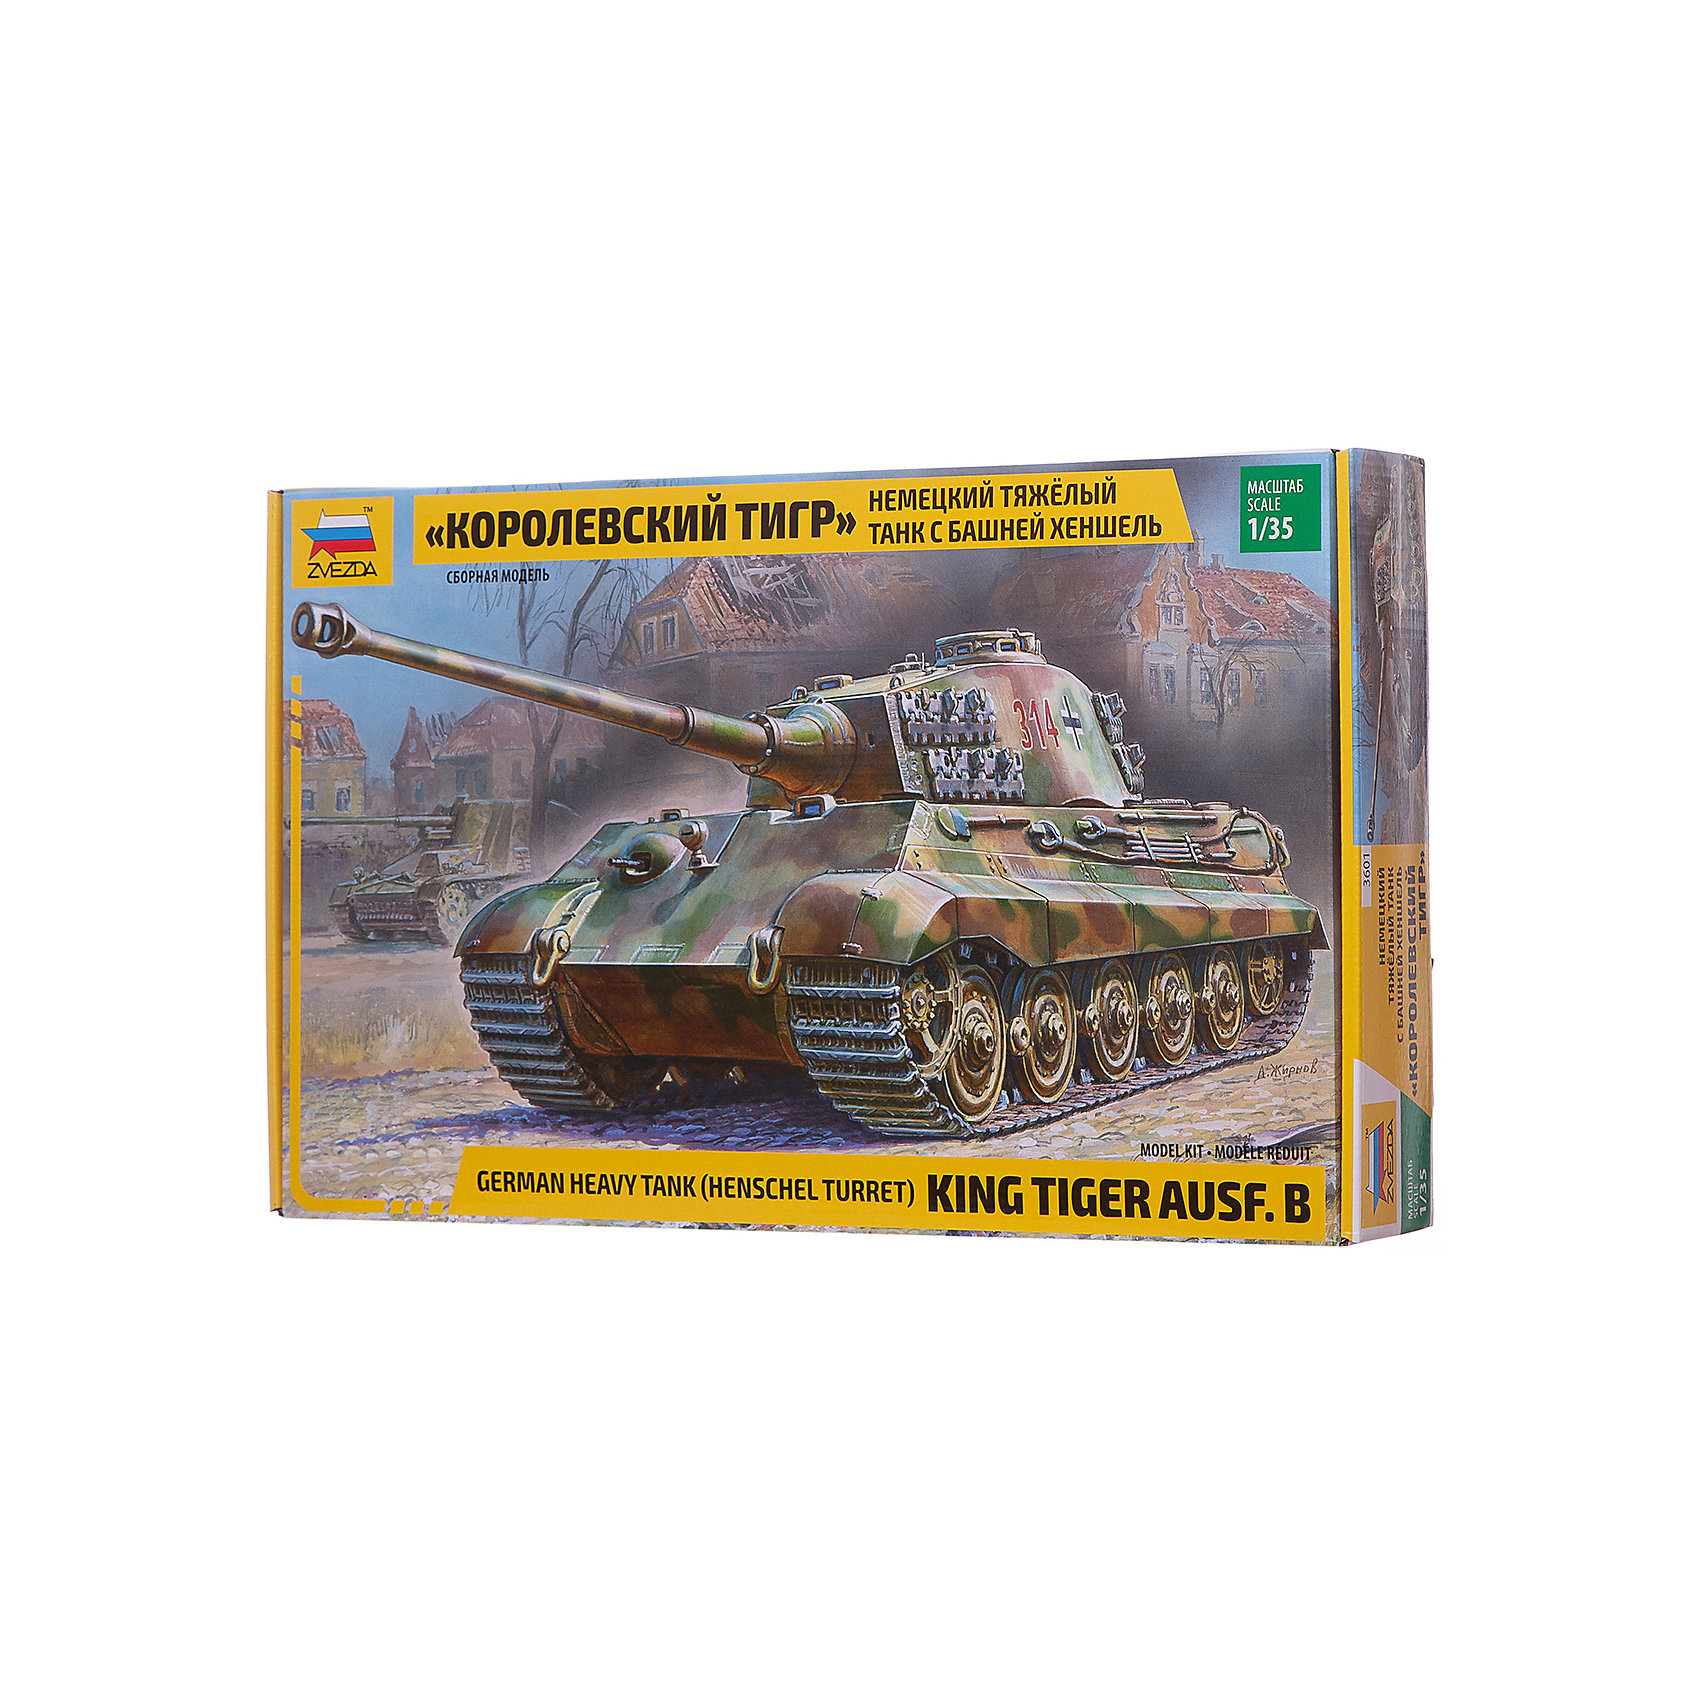 фото Сборная модель звезда "немецкий тяжелый танк королевский тигр с башней хеншеля", 1:35